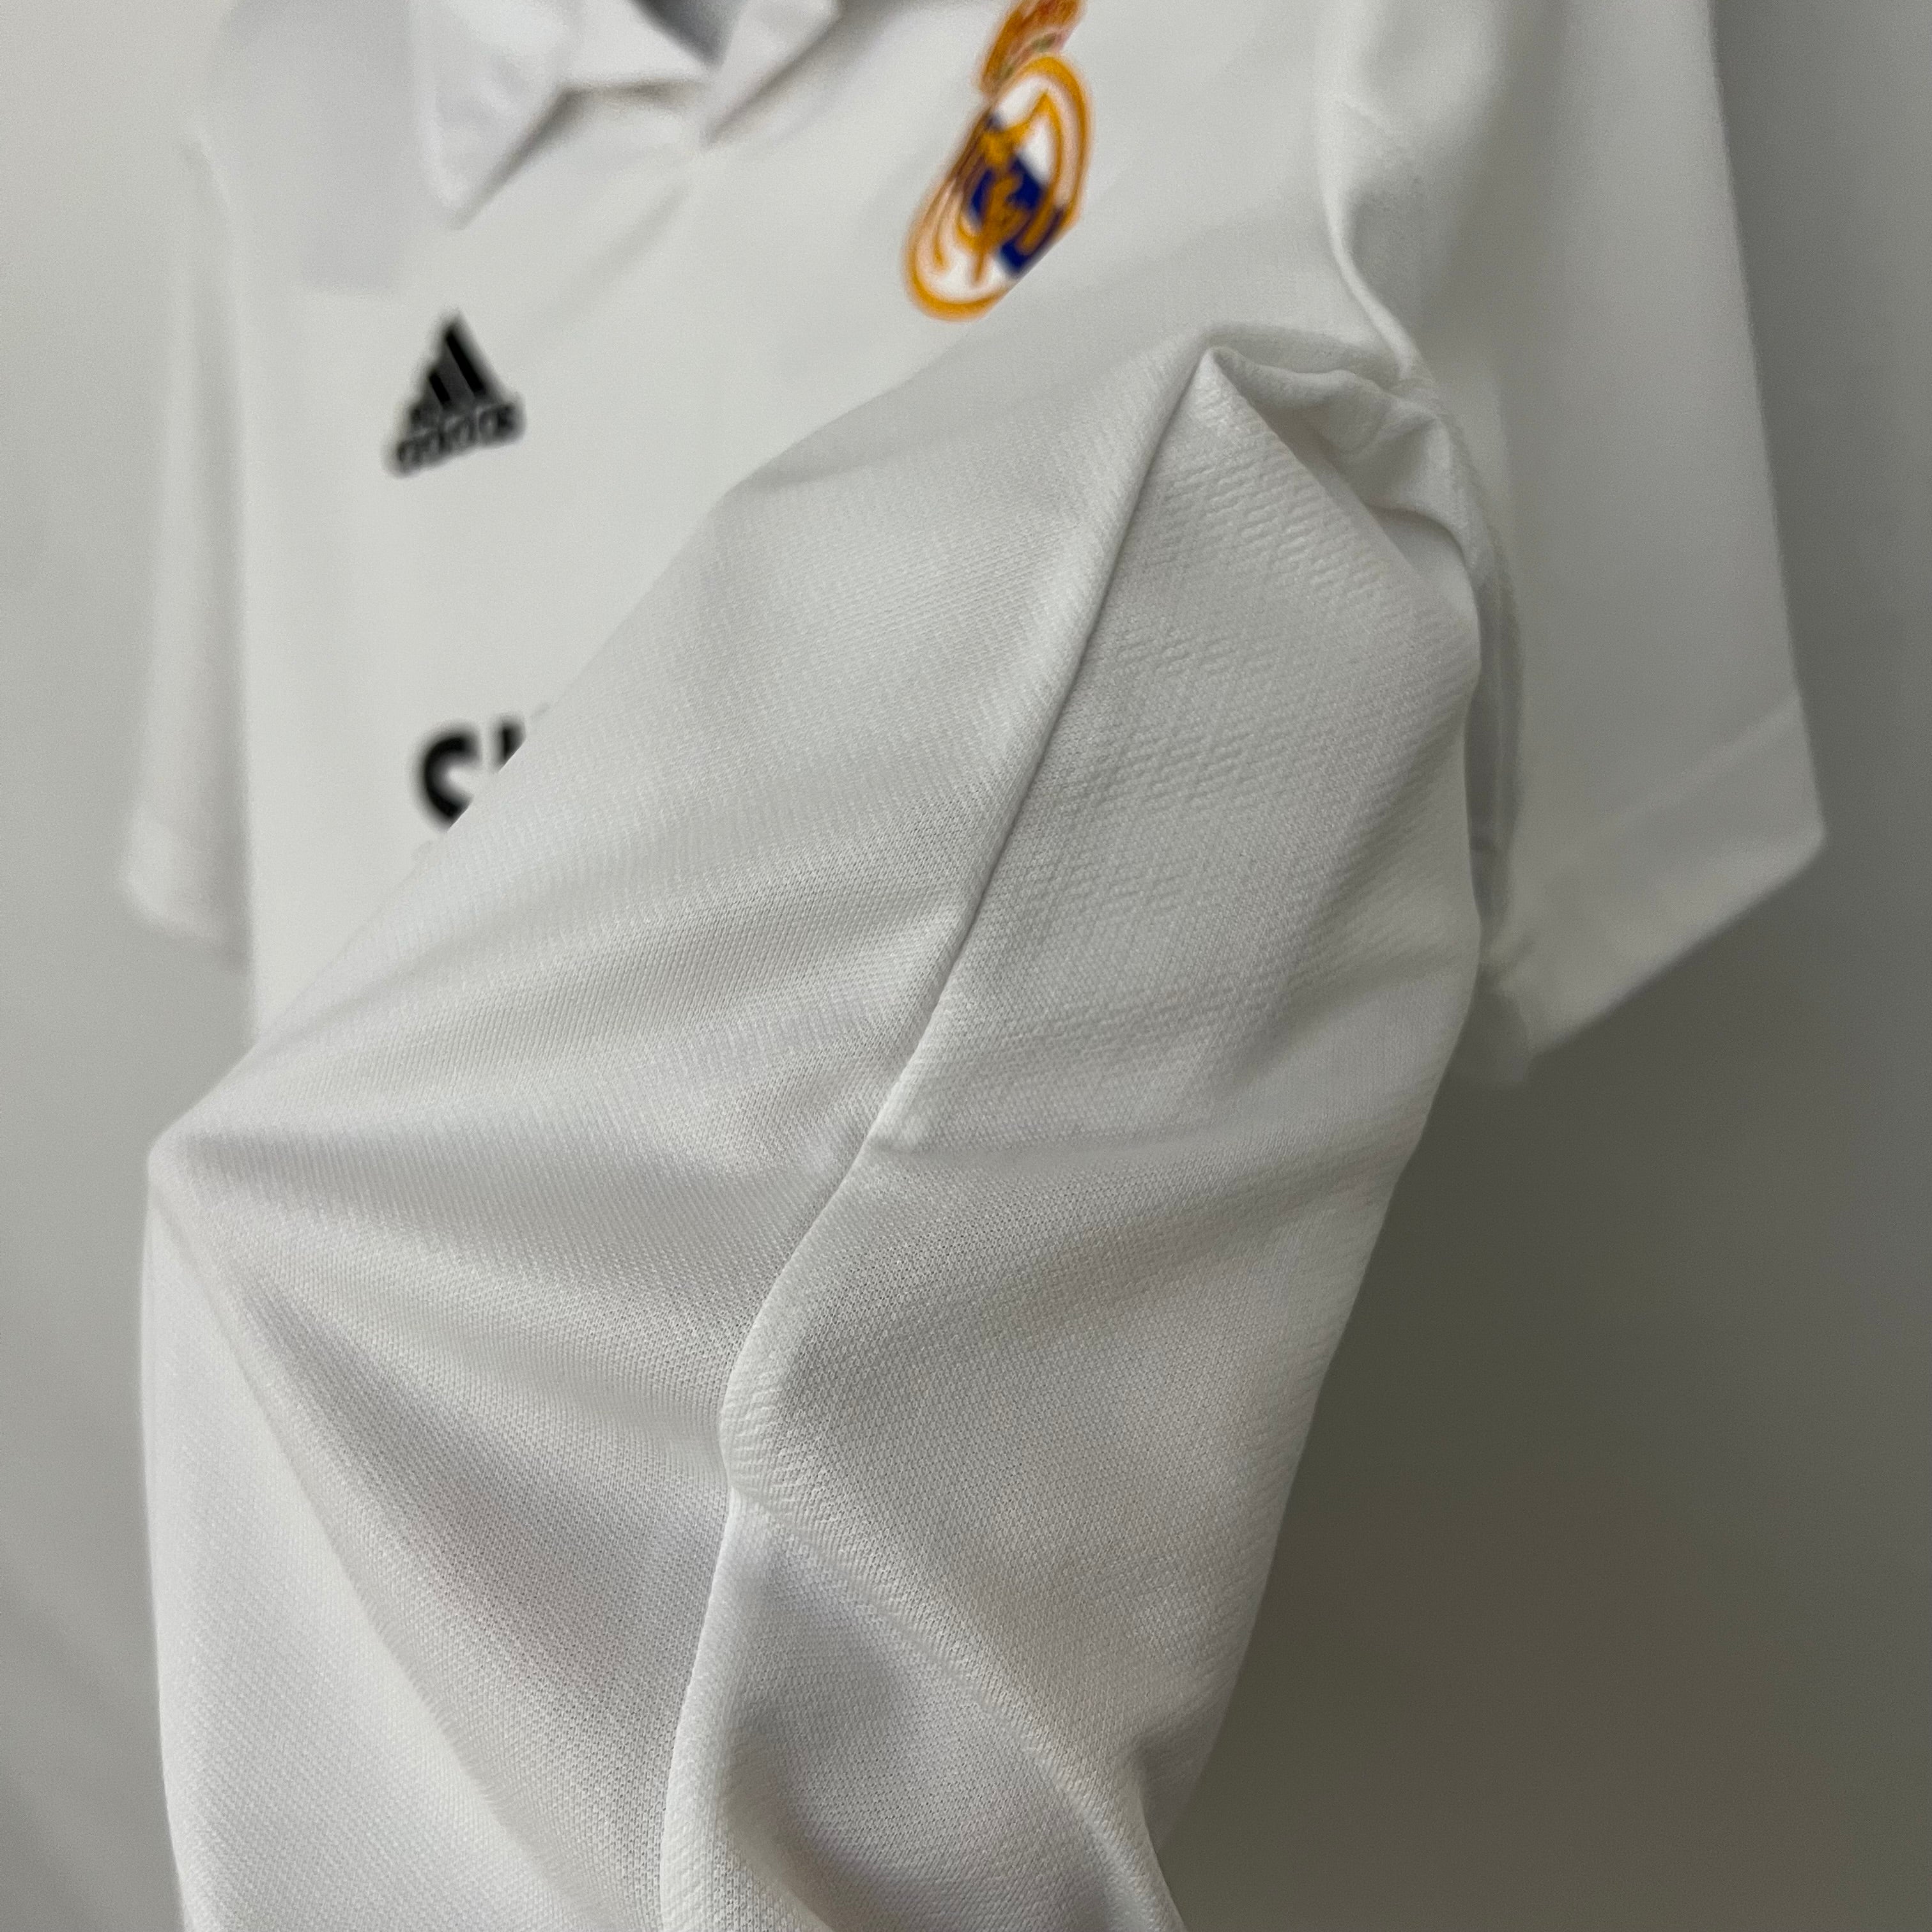 Real Madrid - 02/03 Vintage